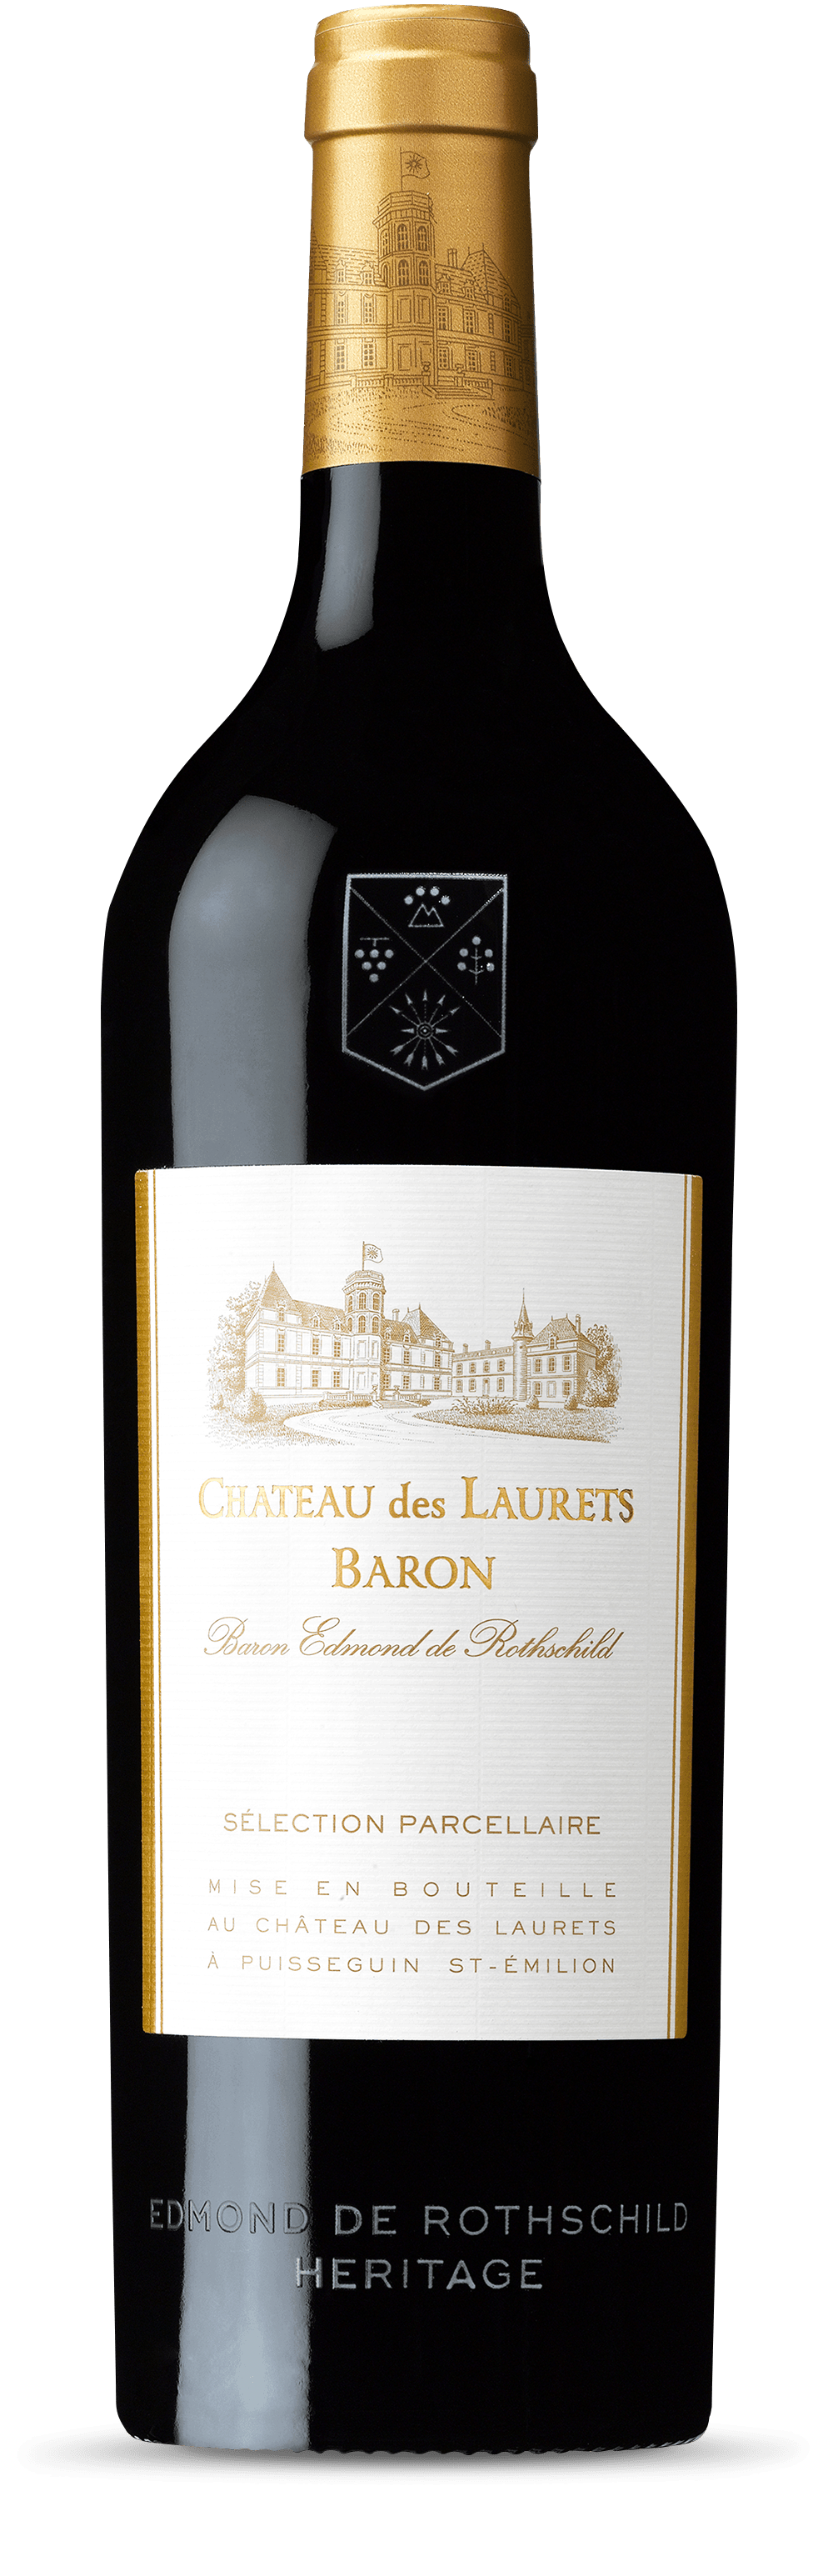 Edmond de Rothschild Heritage Chateau des Laurets Baron 2015 (1x75cl) - TwoMoreGlasses.com